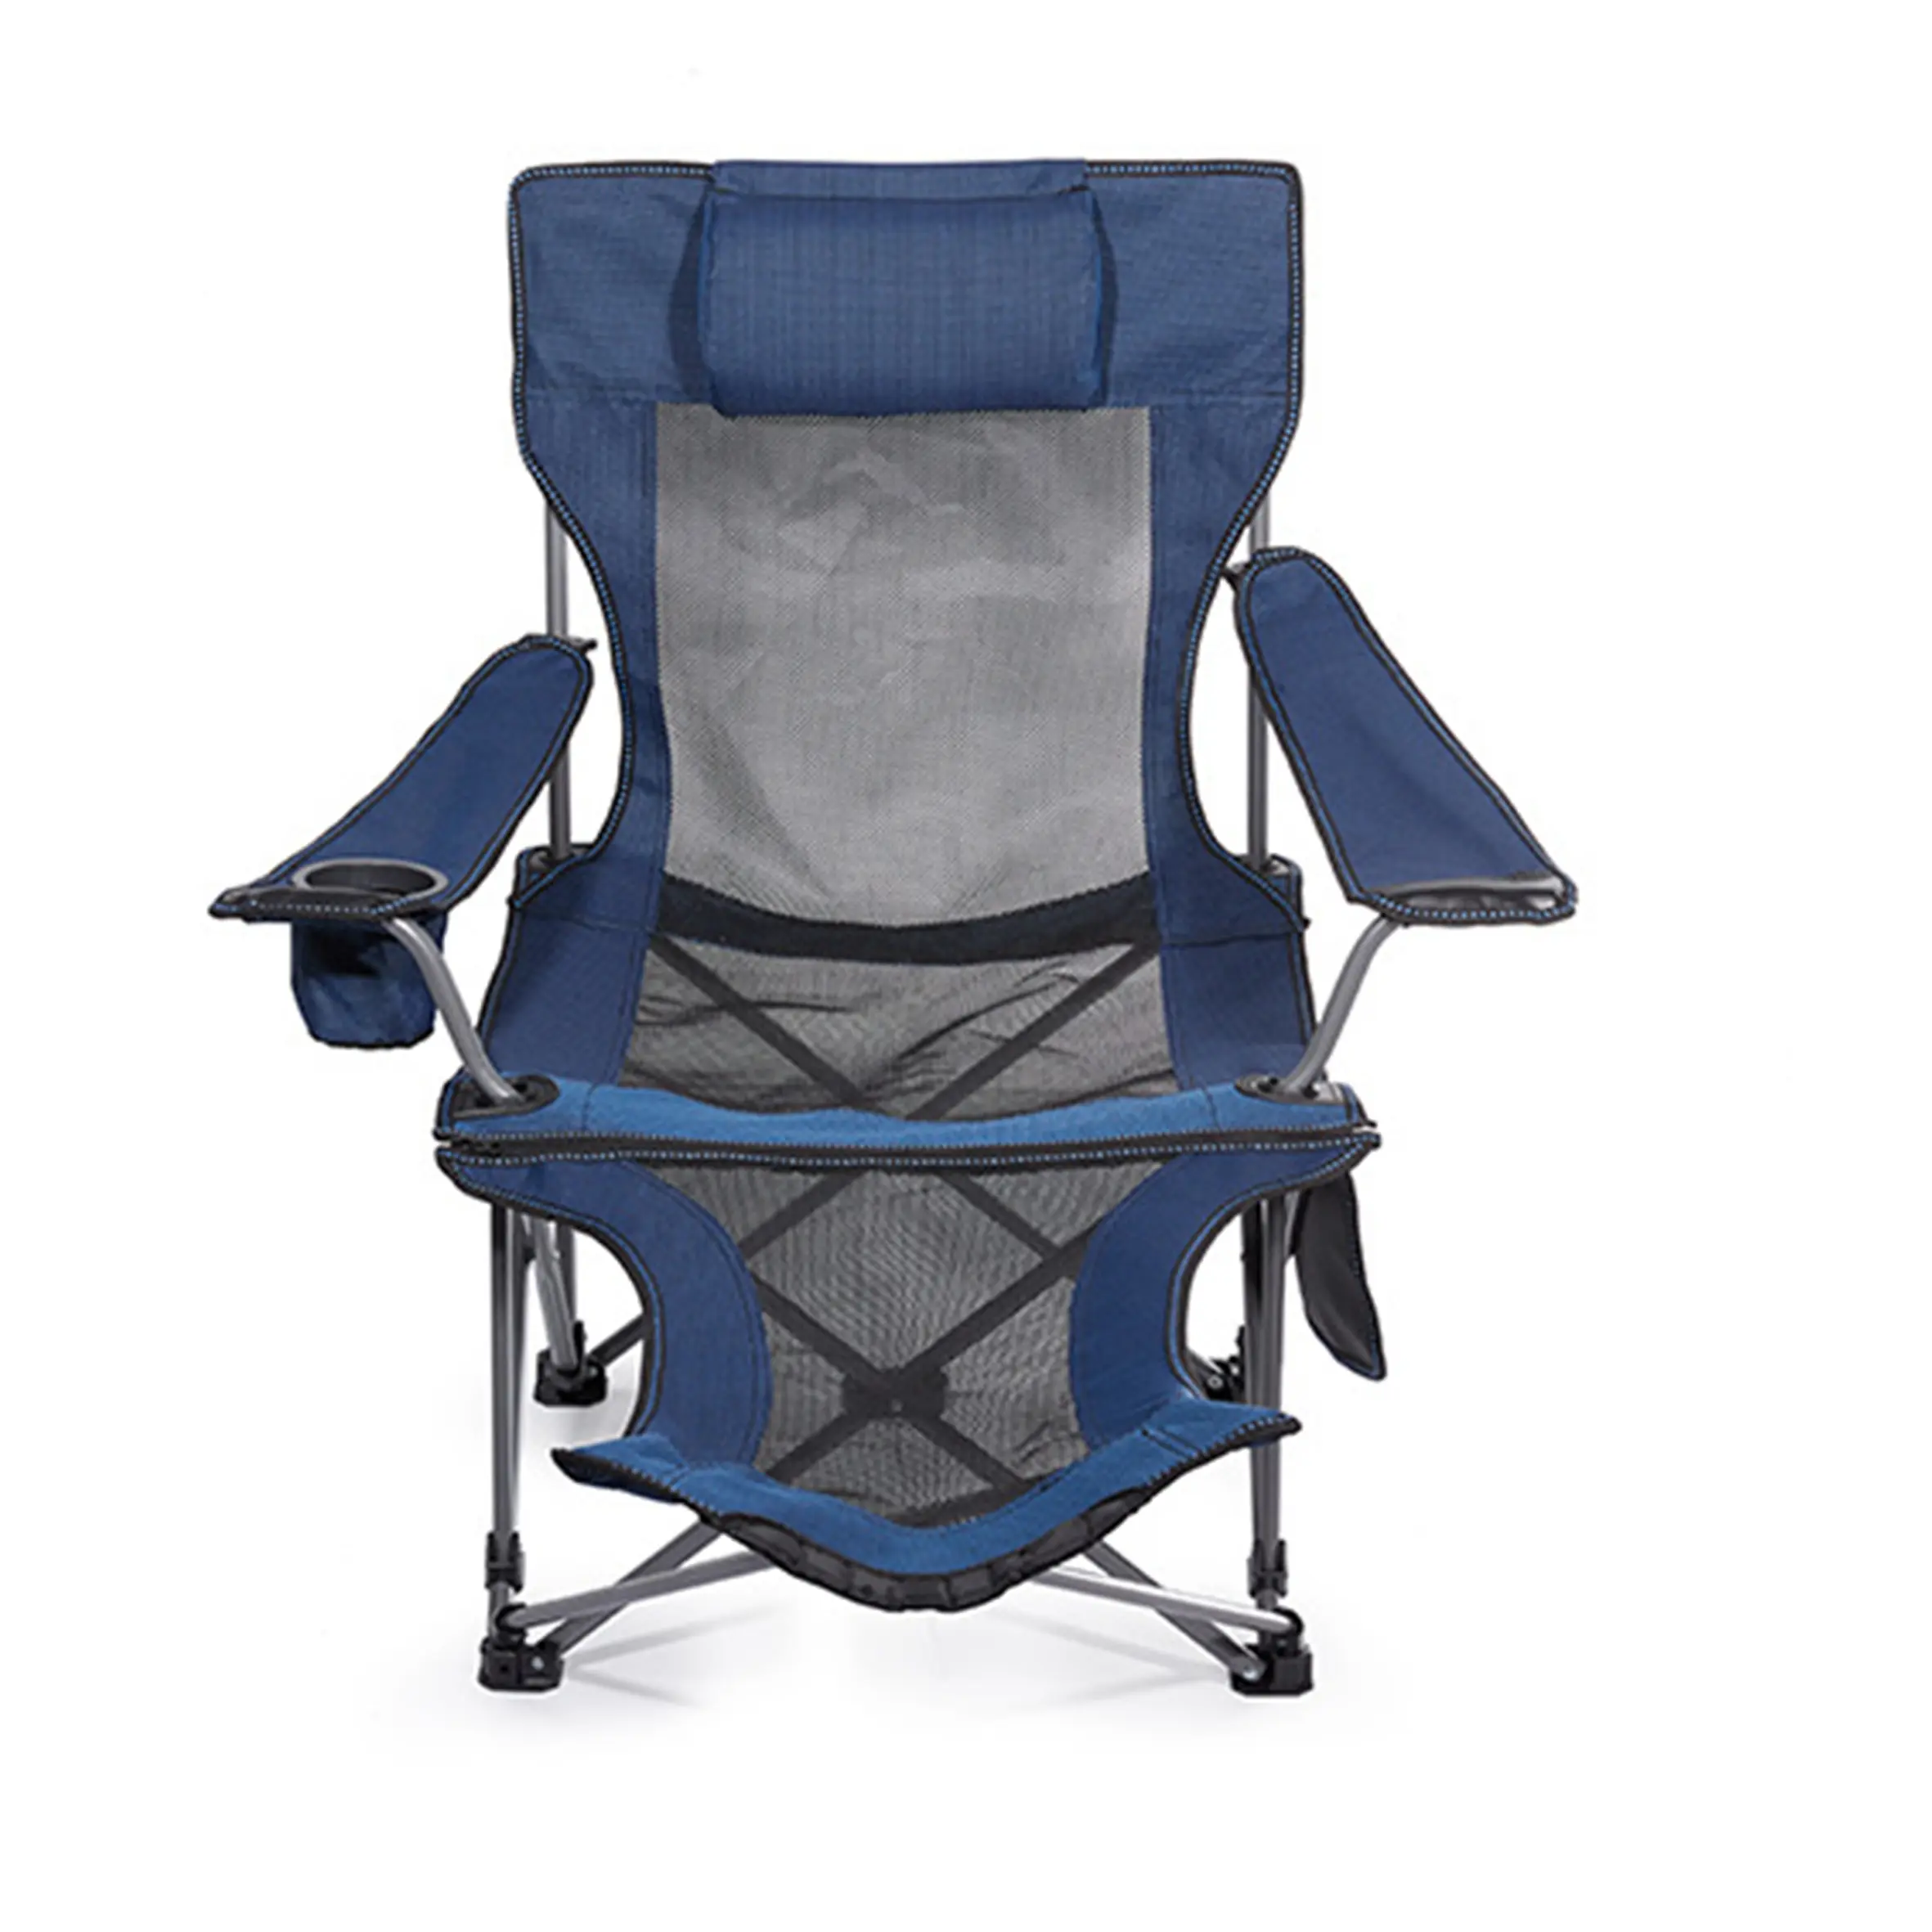 Outdoor Alta Qualidade Dobrável Camping Assento Acolchoado Lua Cadeiras Tecido 100, poliéster Mobiliário Ao Ar Livre Chairss de Praia Moderno/